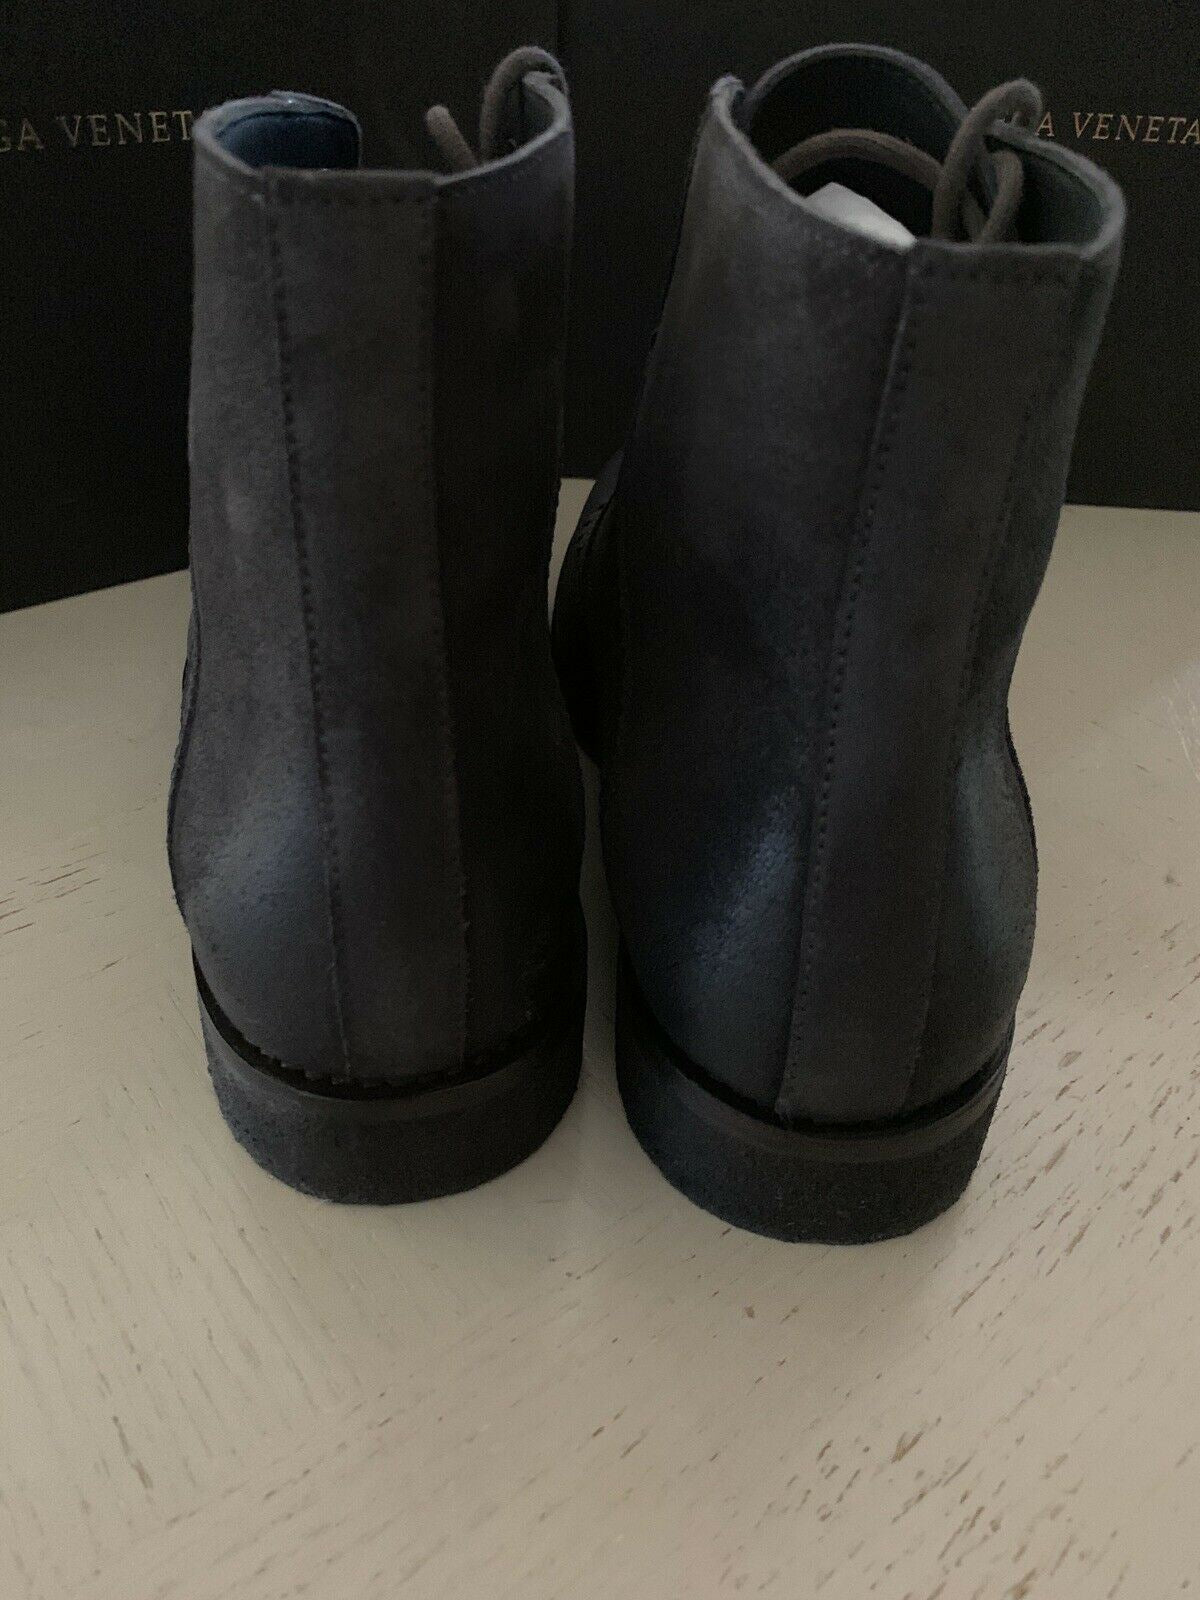 NIB $ 810 Bottega Veneta Herren Lederstiefel Schuhe DK Grau 8,5 US/41,5 Eu 